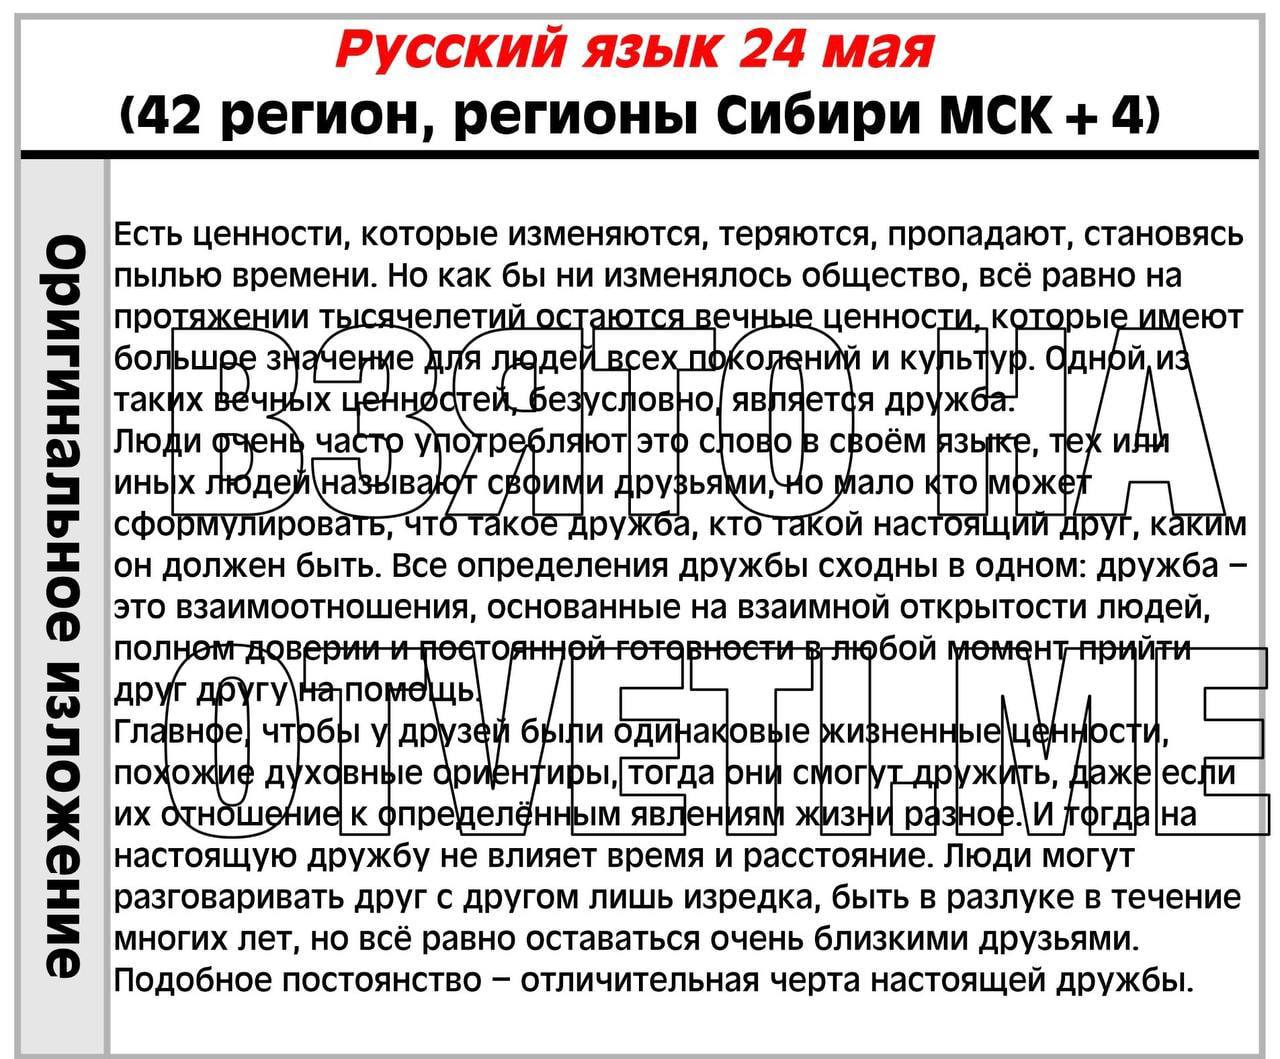 Телеграмм ответы на огэ по русскому языку фото 75